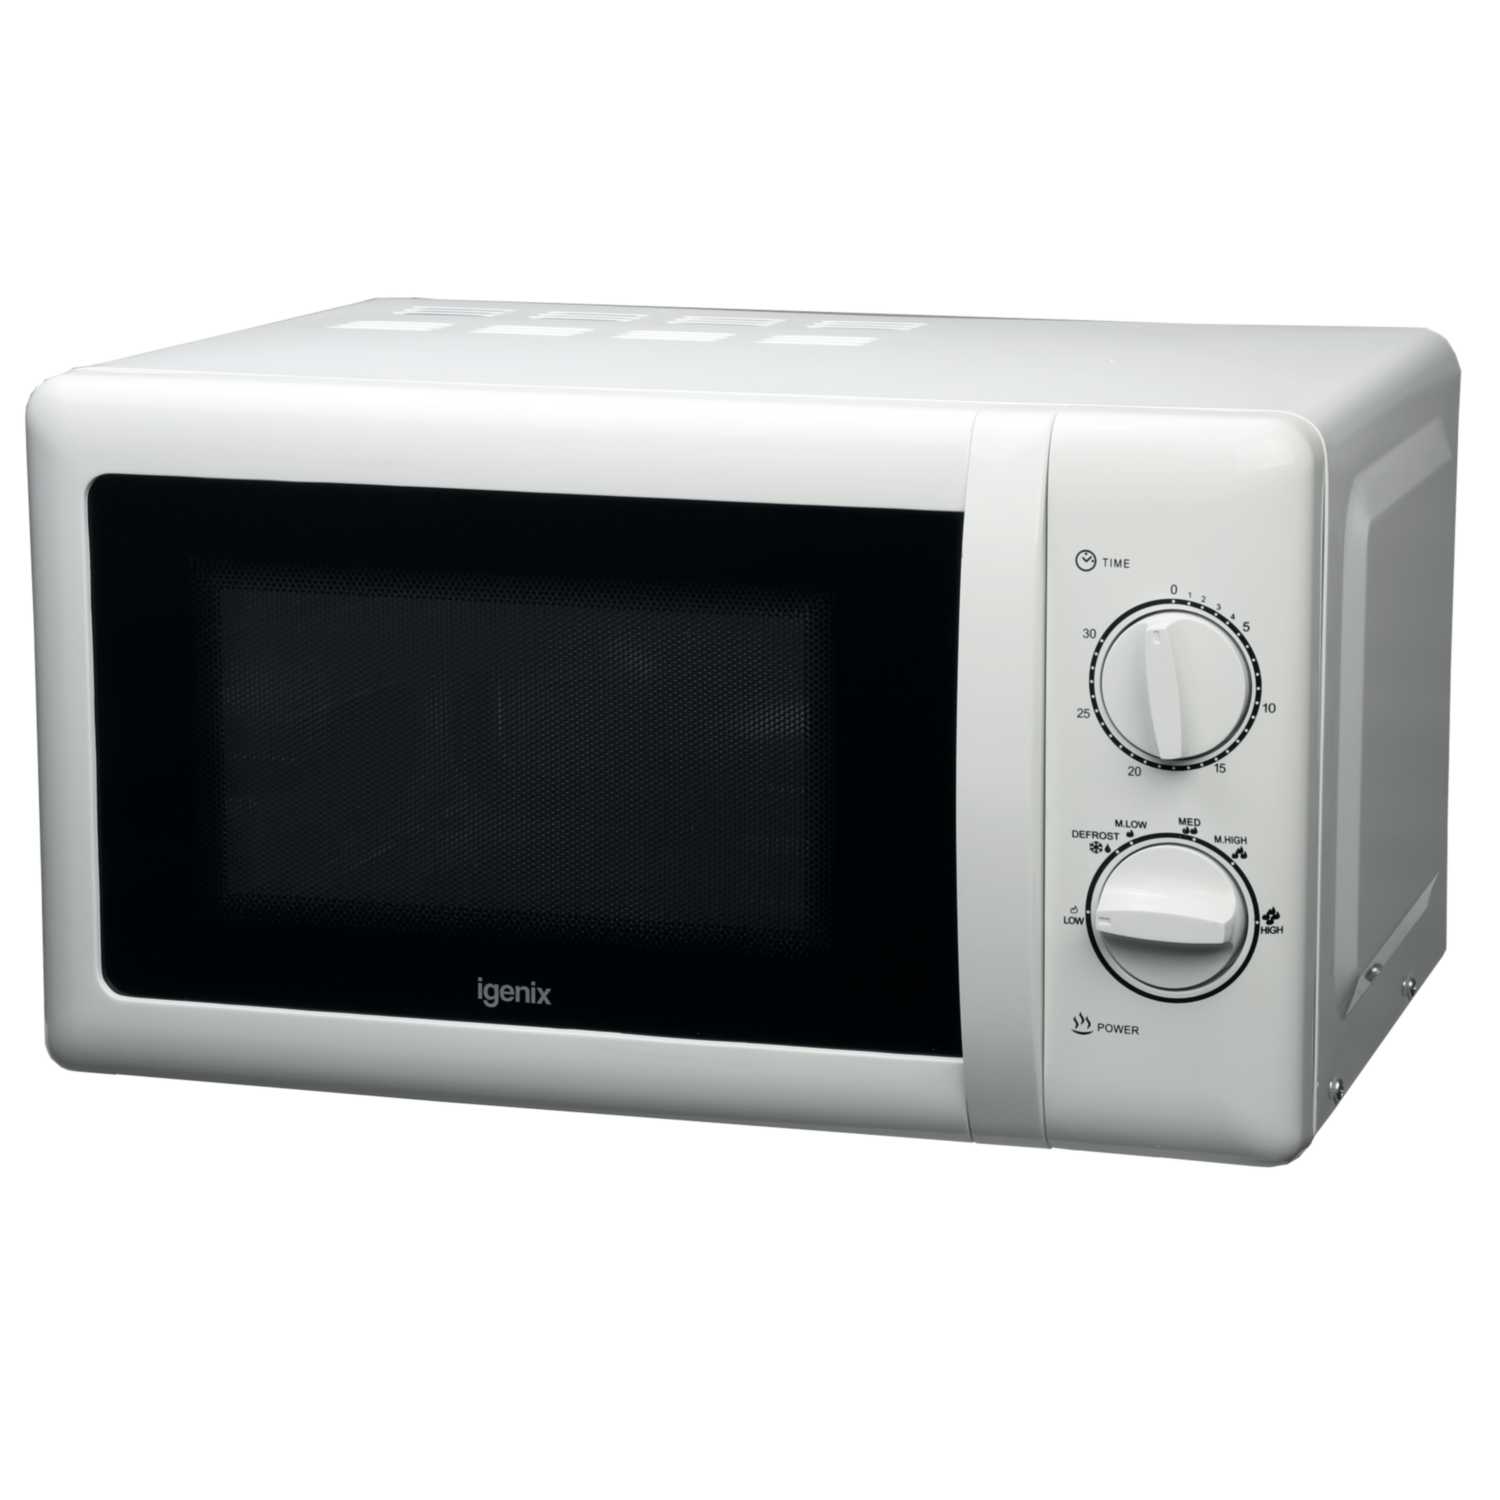 Igenix 20Ltr 800w Manaul Microwave White